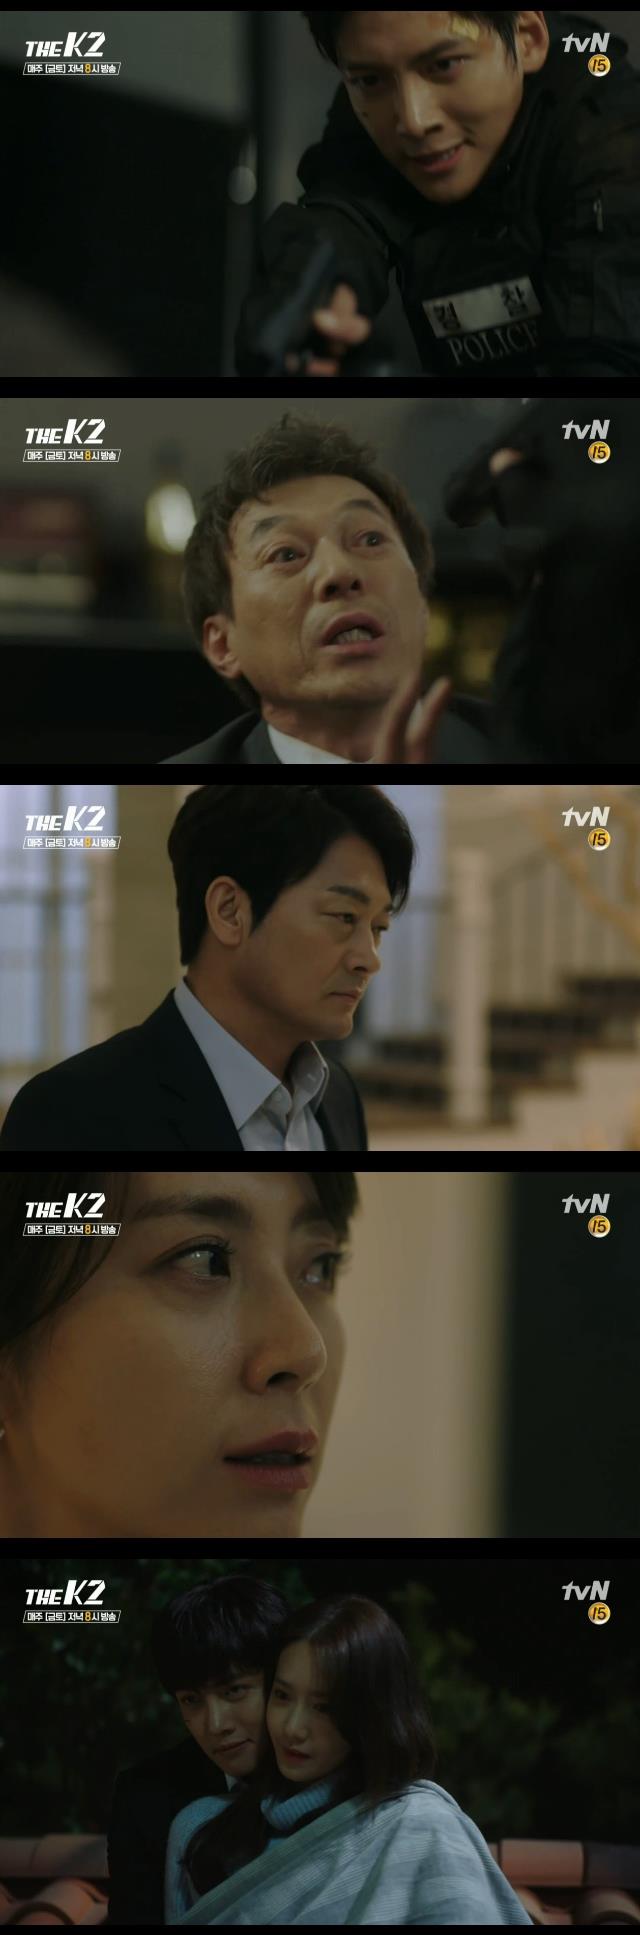 28일 저녁 방송되는 tvN 금토드라마 '더 케이투' 11회에서는 최유진(송윤아)가 김제하(지창욱)를 제거하려 박관수(김갑수)에게 보내지만 살아서 돌아오는 장면이 그려진다./사진=tvN영상 캡처